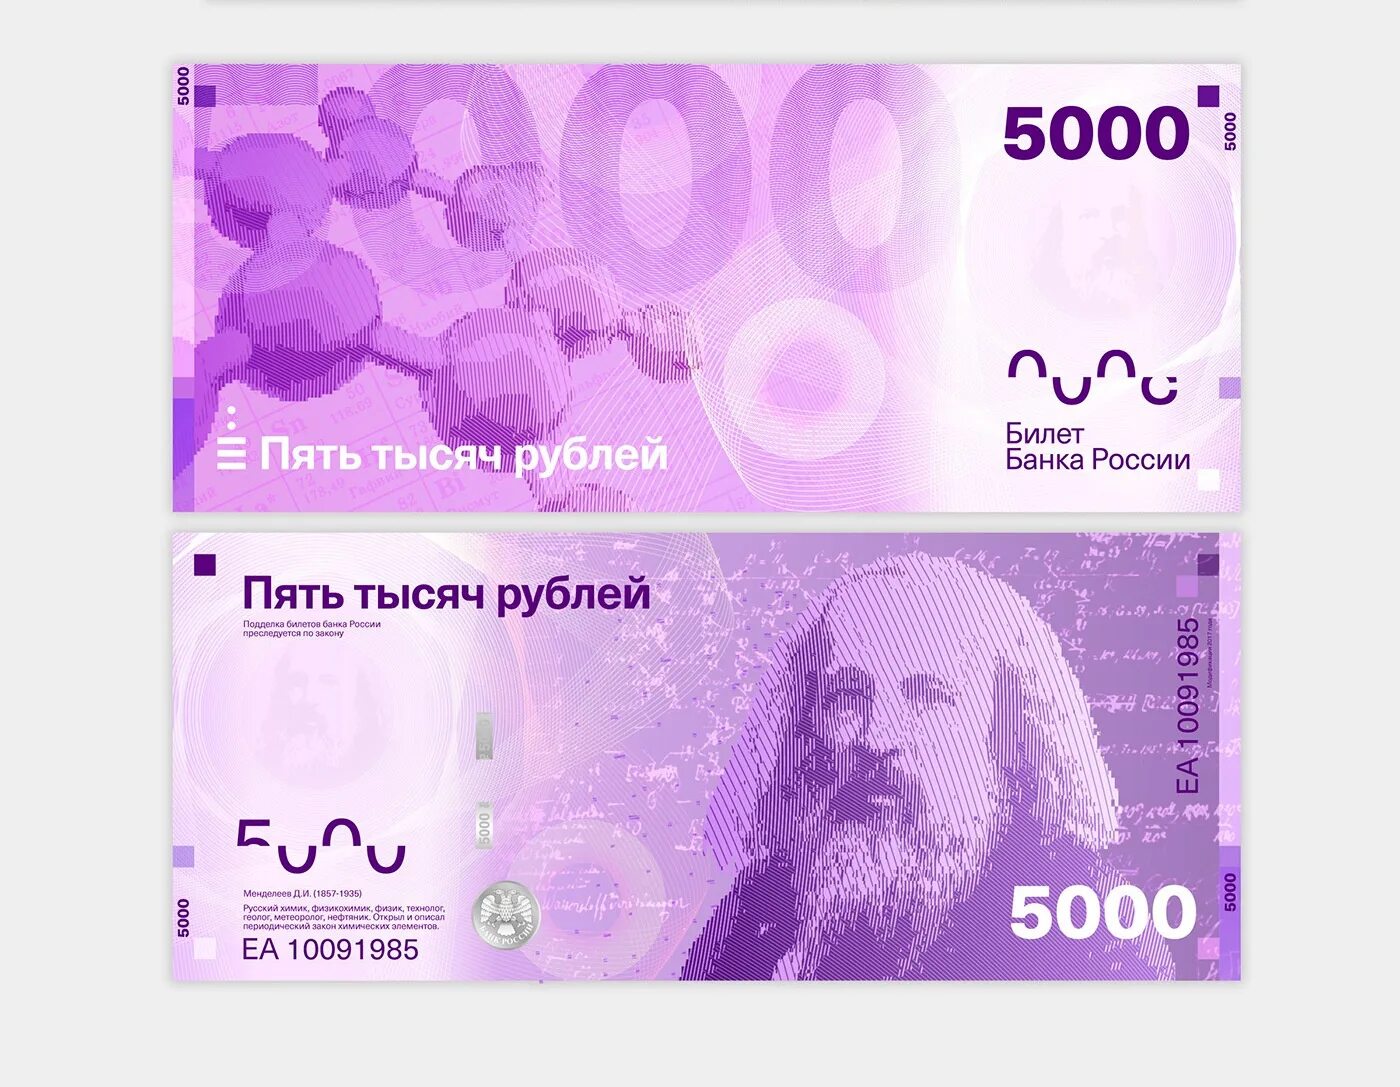 Редизайн российских банкнот. Новый дизайн банкнот. Новый дизайн банкнот России. Новый дизайн рублей.